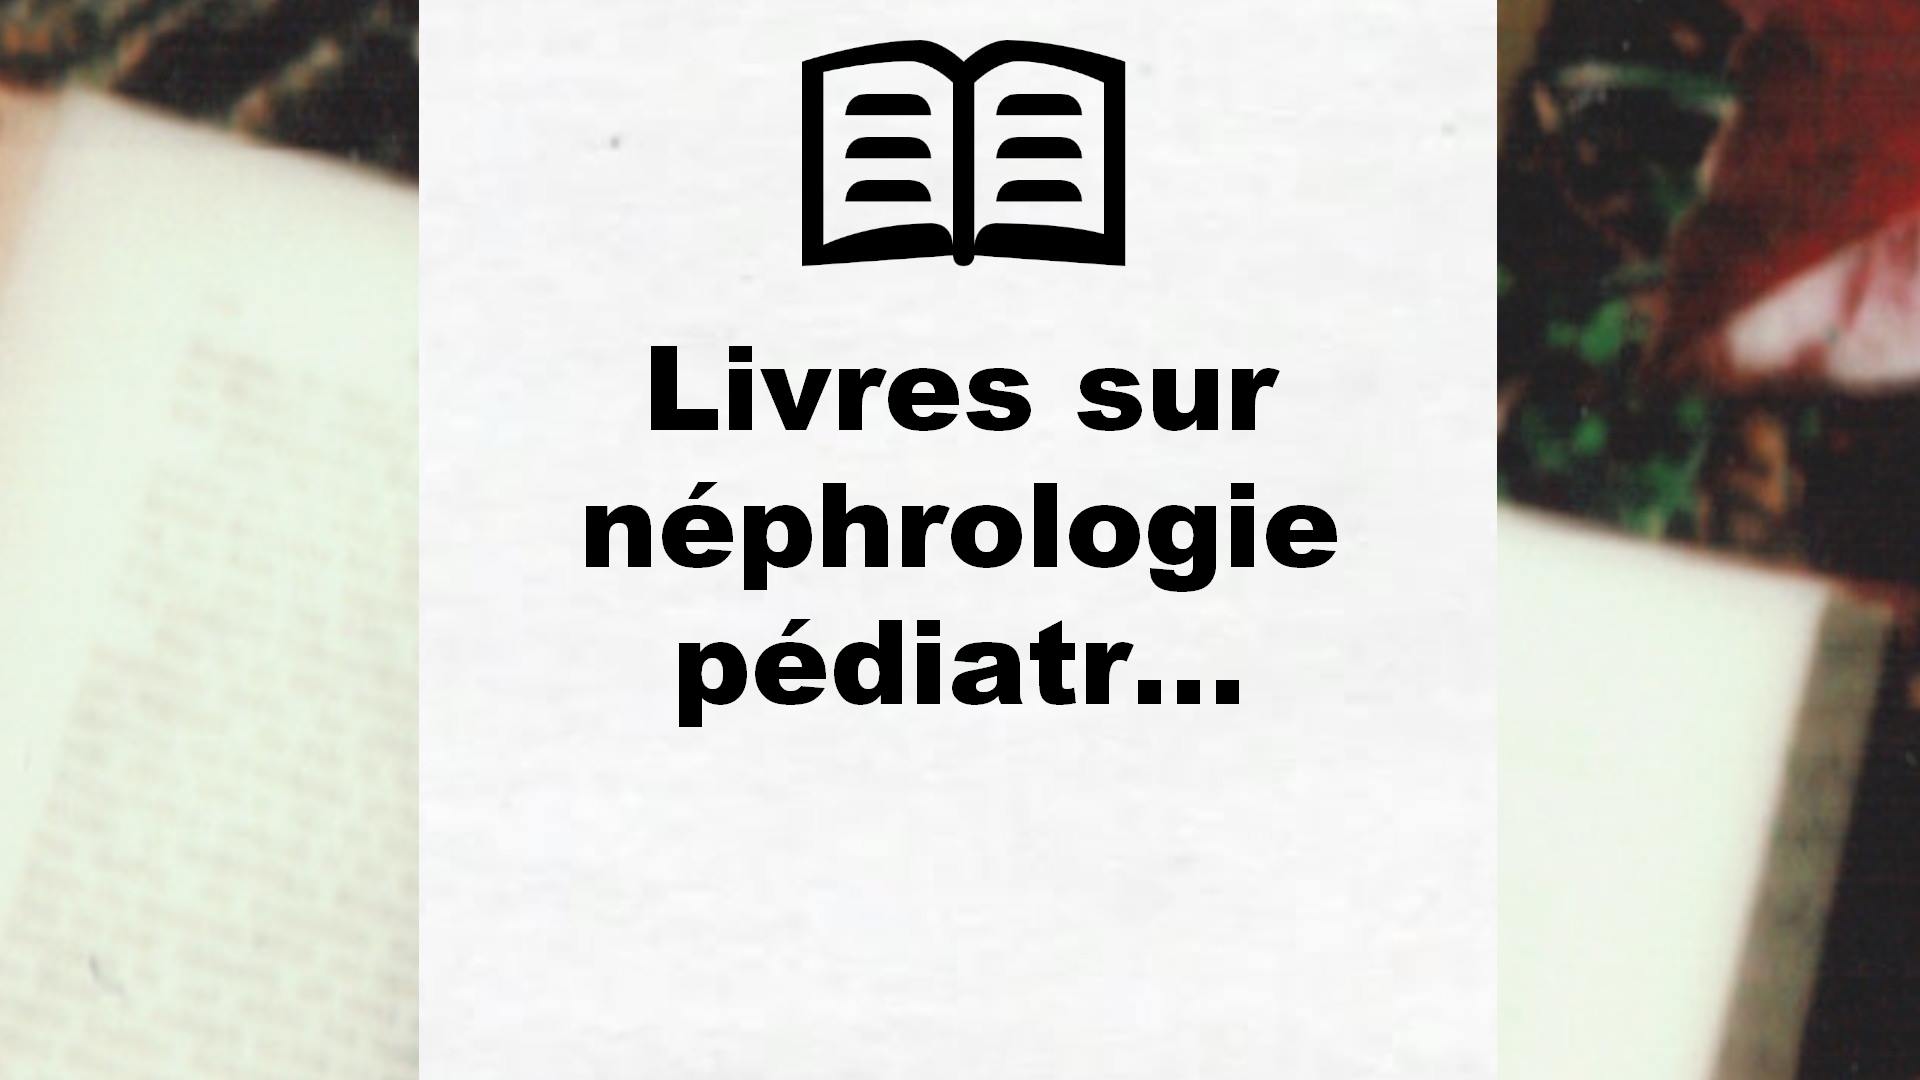 Livres sur néphrologie pédiatrique